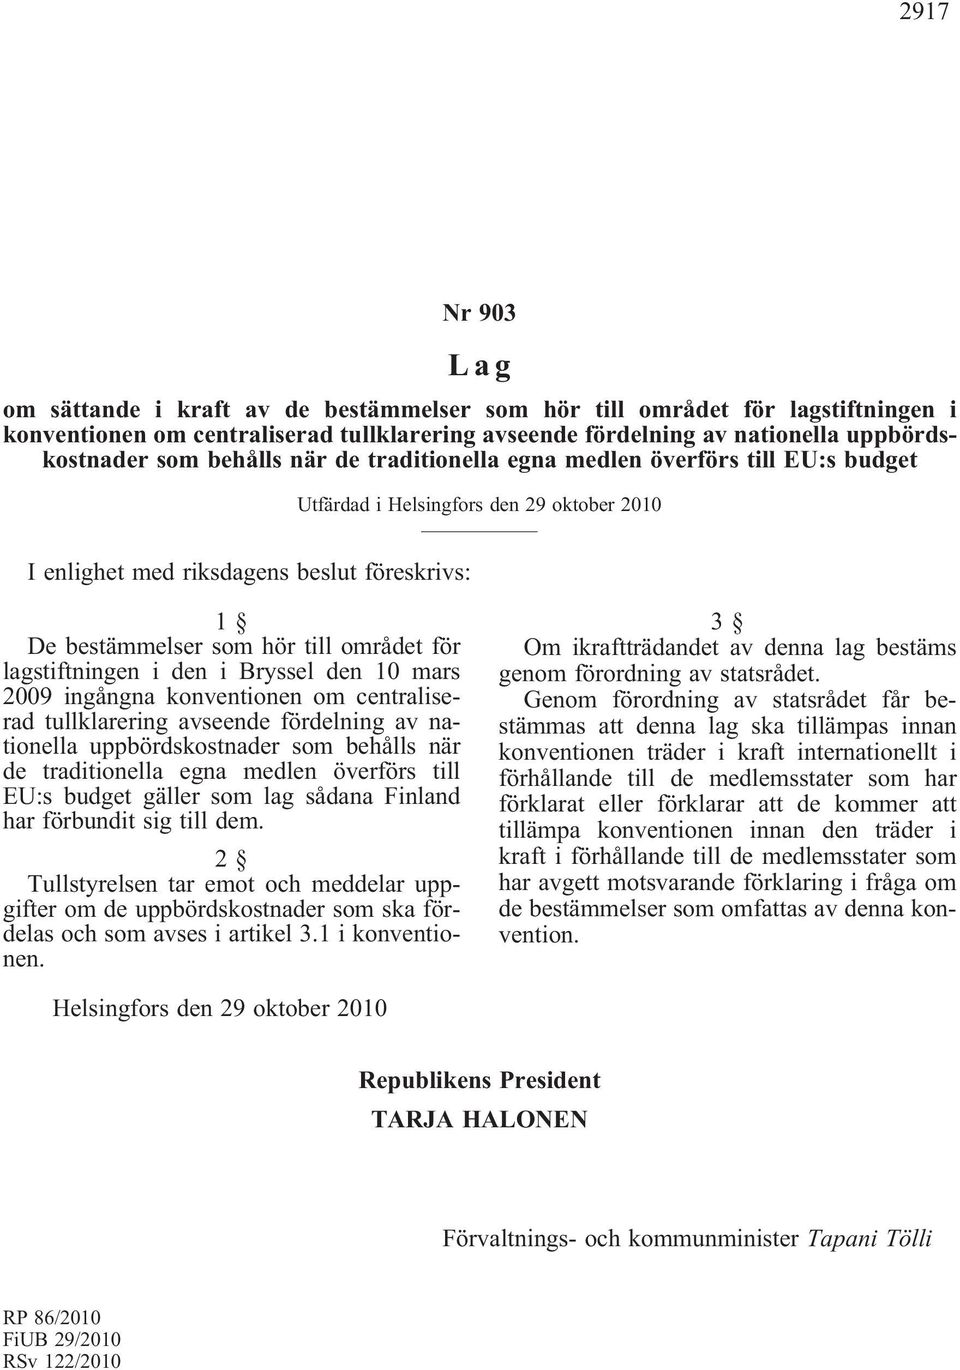 lagstiftningen i den i Bryssel den 10 mars 2009 ingångna konventionen om centraliserad tullklarering avseende fördelning av nationella uppbördskostnader som behålls när de traditionella egna medlen